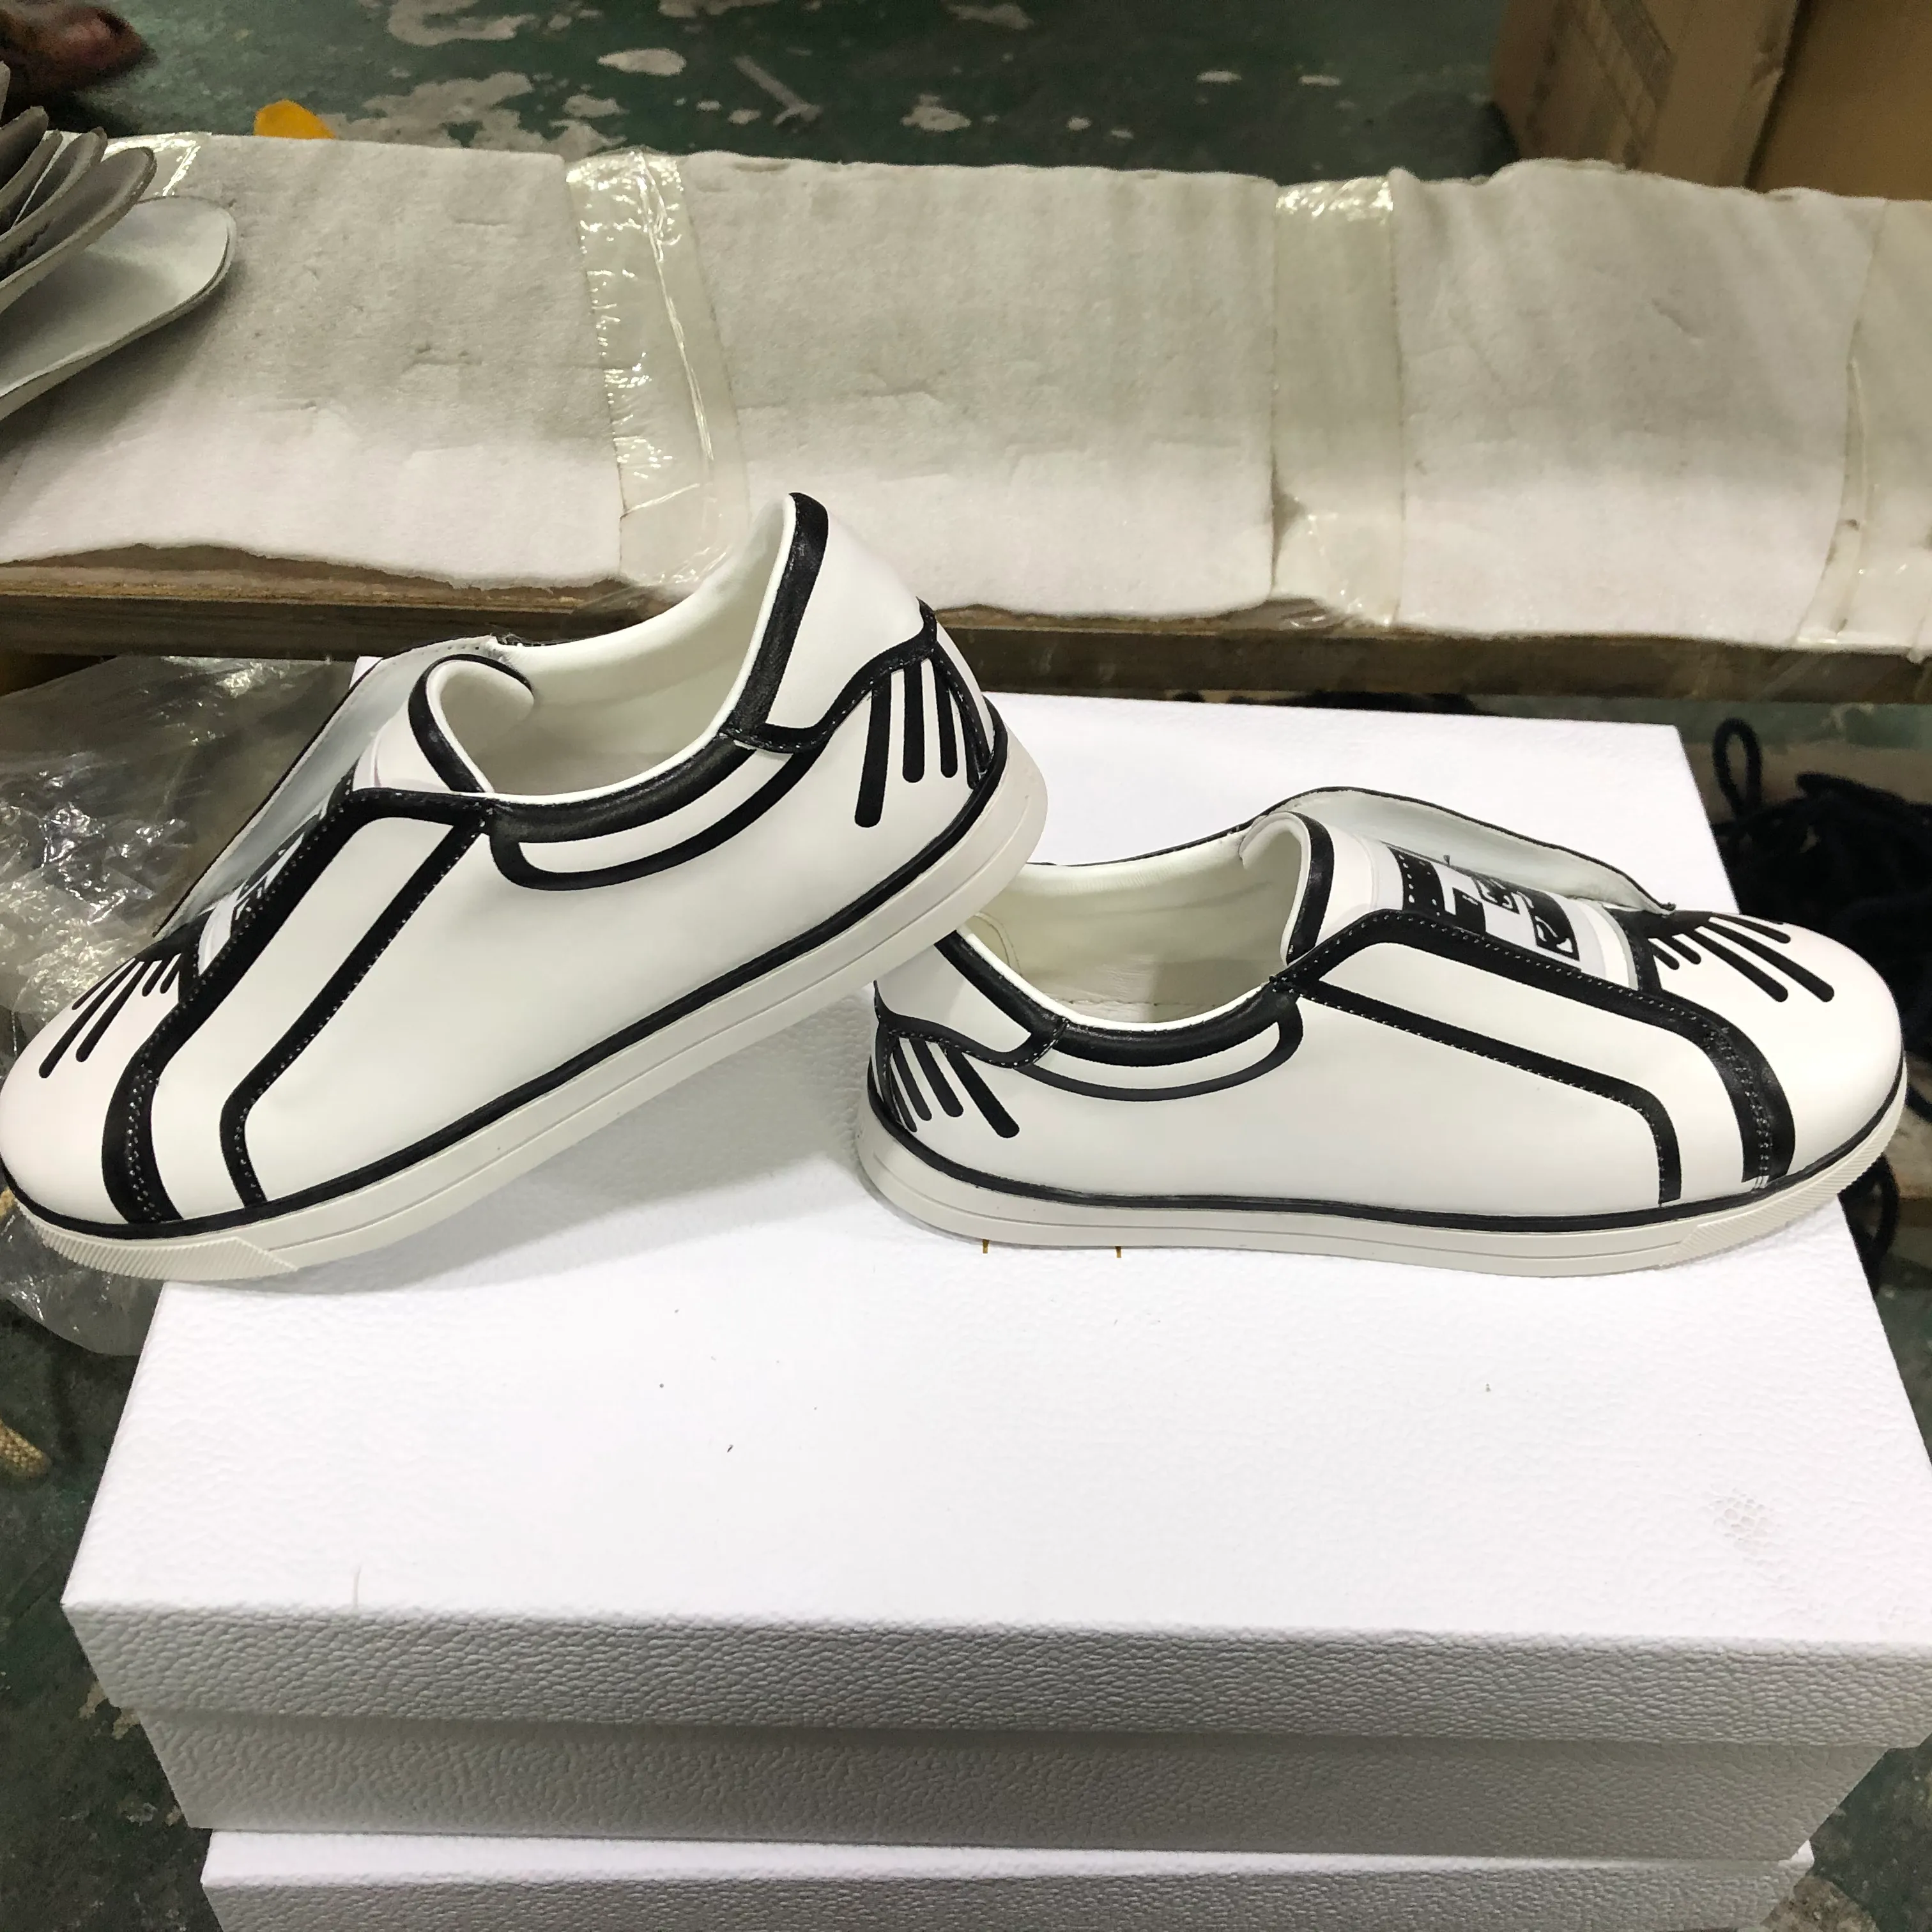 2020 été California Sky série chaussures de sport basses peintes à la main décontracté rétro graffiti confortable lumière tendance Instagram